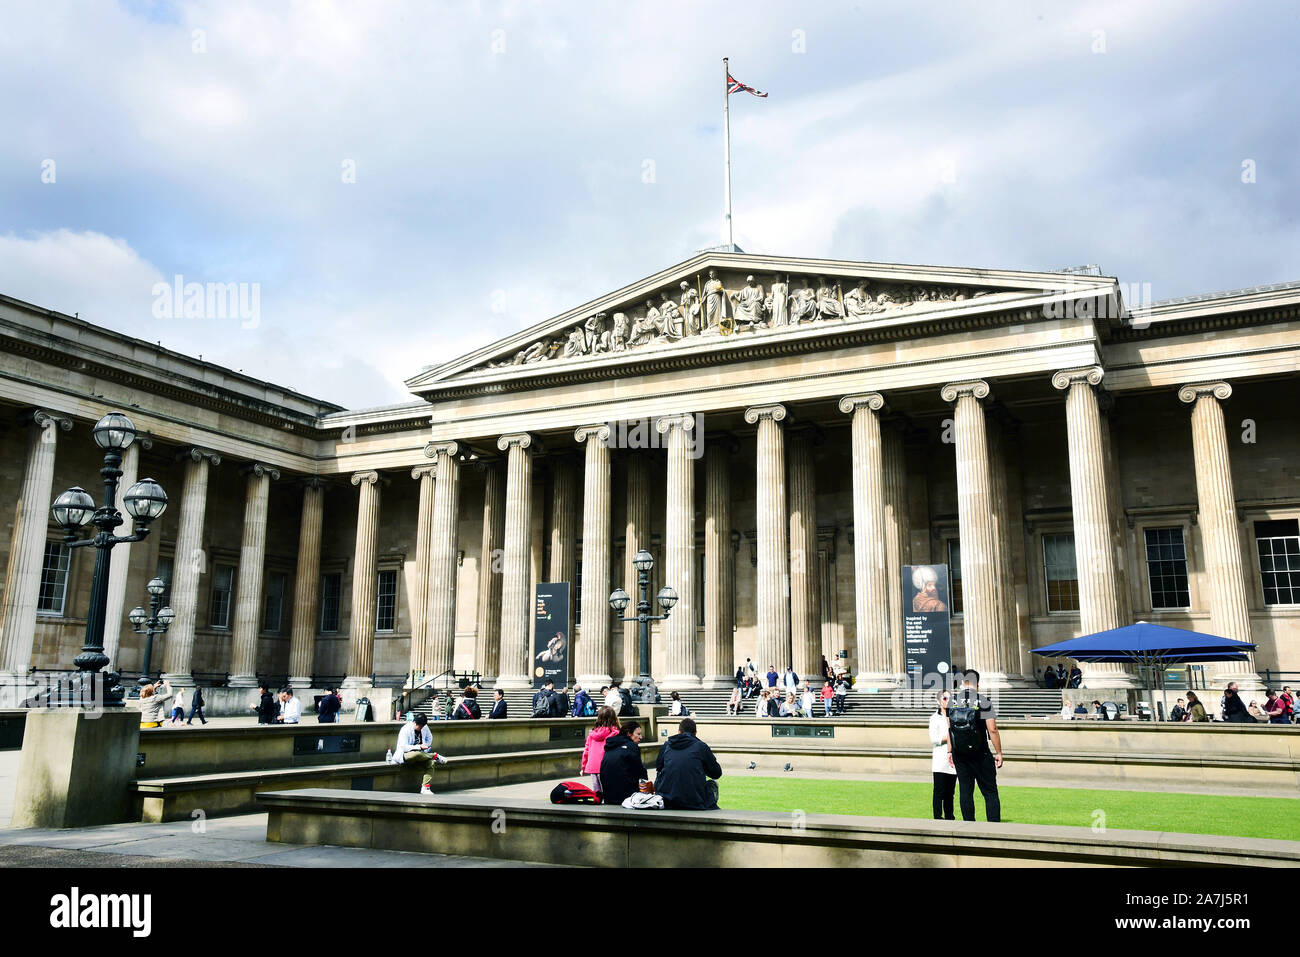 06 settembre 2019, la Gran Bretagna, Londra: visitatori stand di fronte al British Museum. Il museo è uno dei più grandi ed importanti musei di storia culturale nel mondo. Circa otto milioni di oggetti sono state raccolte e documenta la storia culturale dell umanità dai suoi albori ai nostri giorni. Foto: Waltraud Grubitzsch/dpa Foto Stock